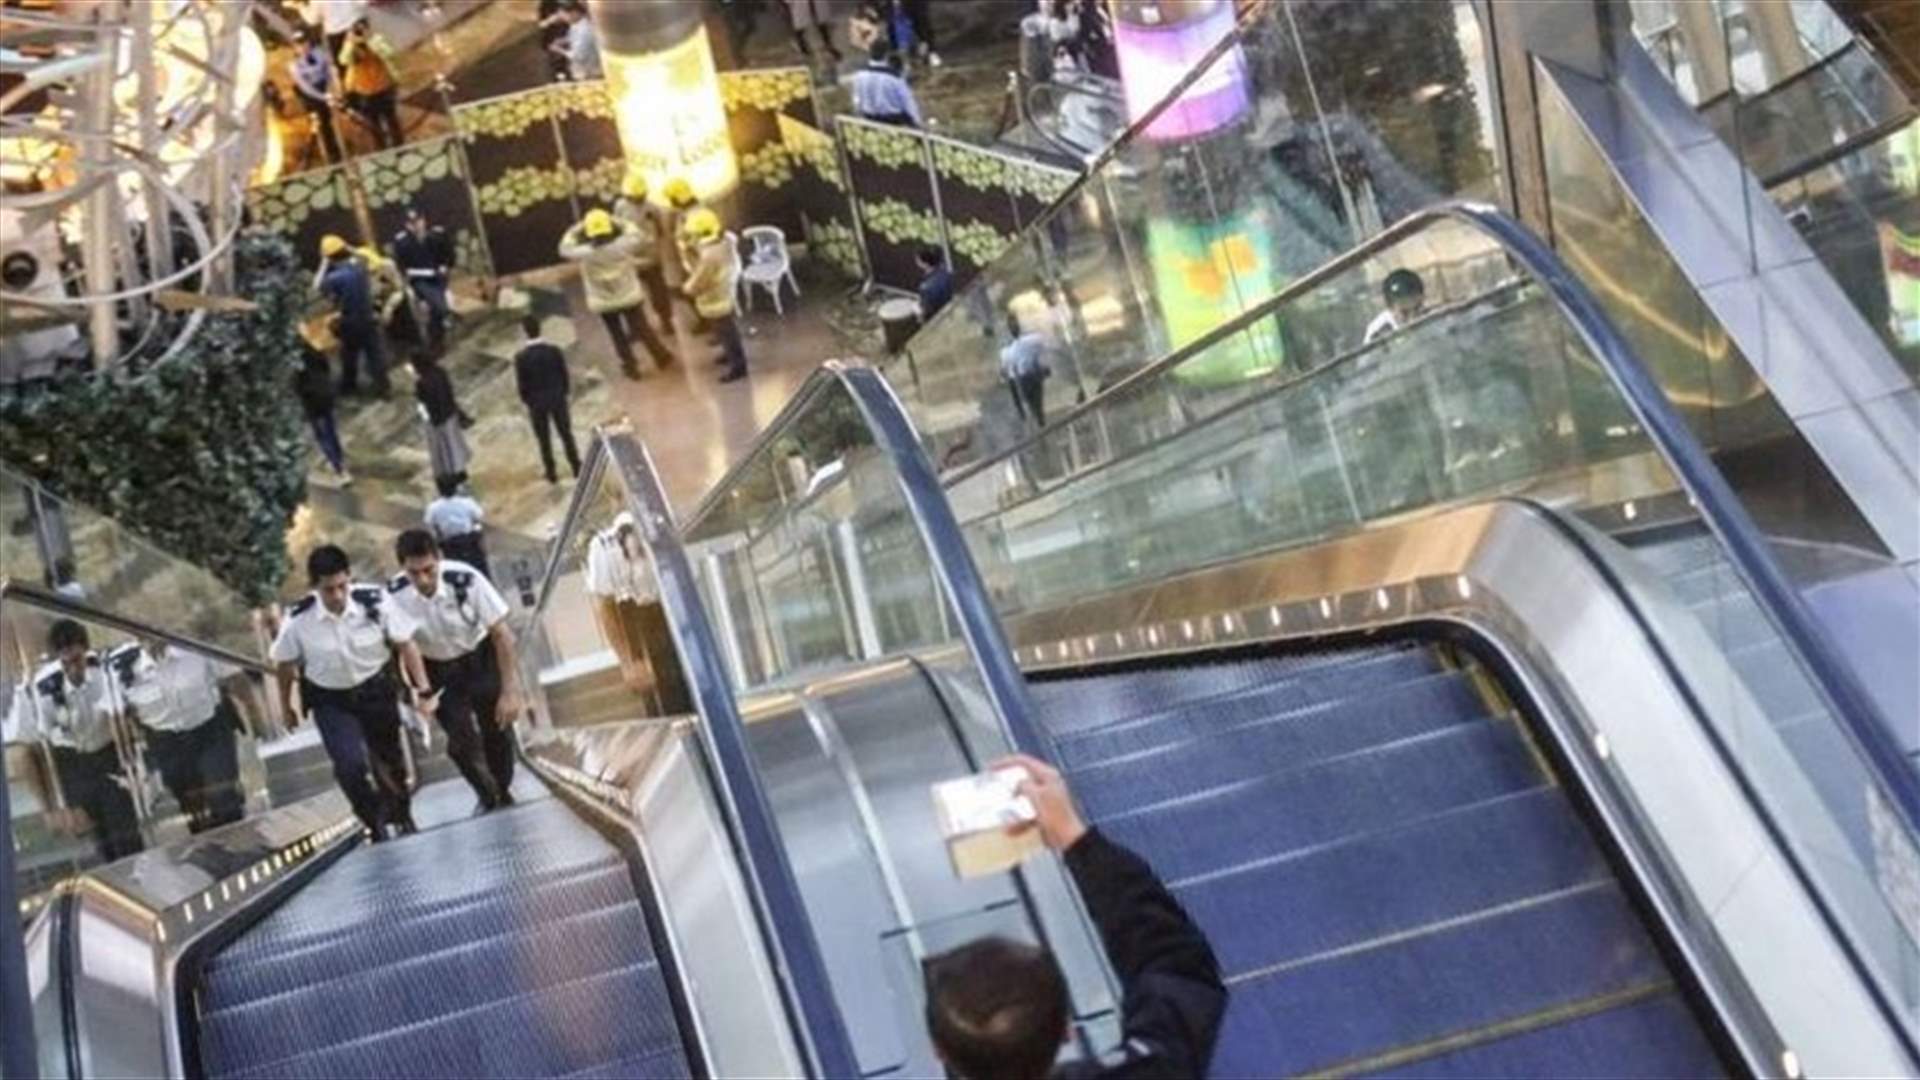 بالفيديو - حادثة غريبة داخل مركز تجاري في الصين بسبب السلّم الكهربائي!